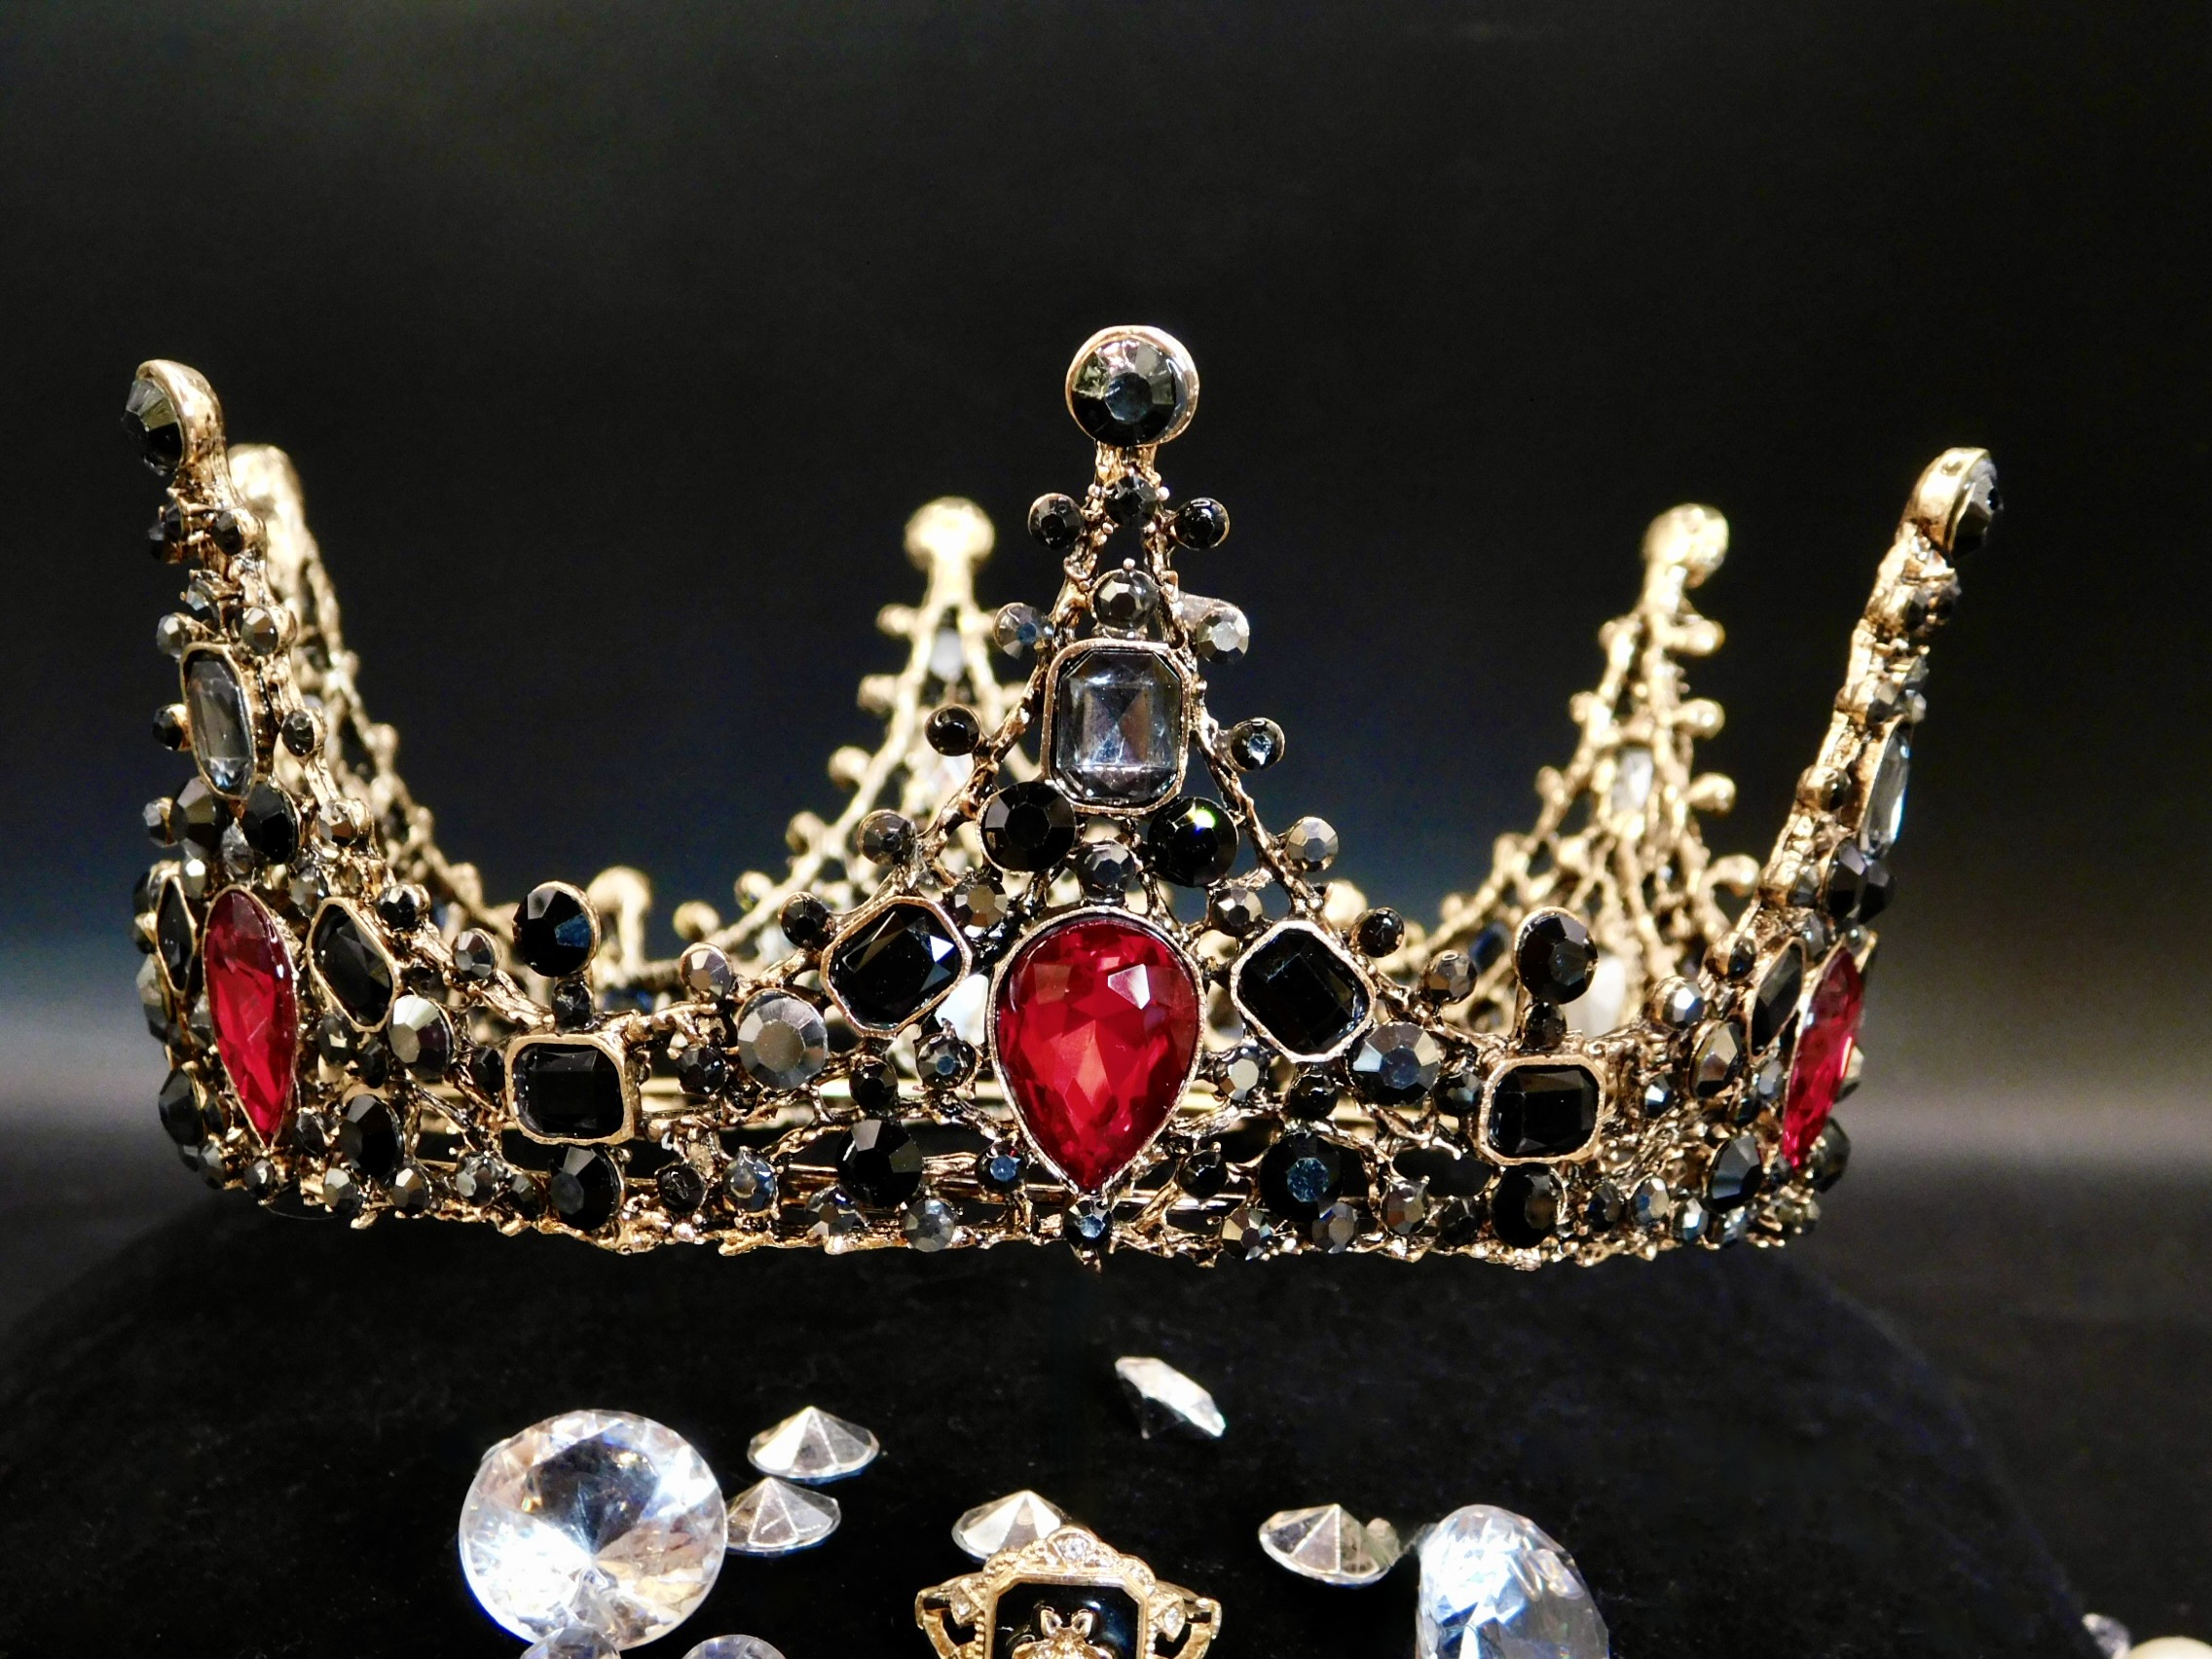 Vampire Crown - Queen Bee Crown Company